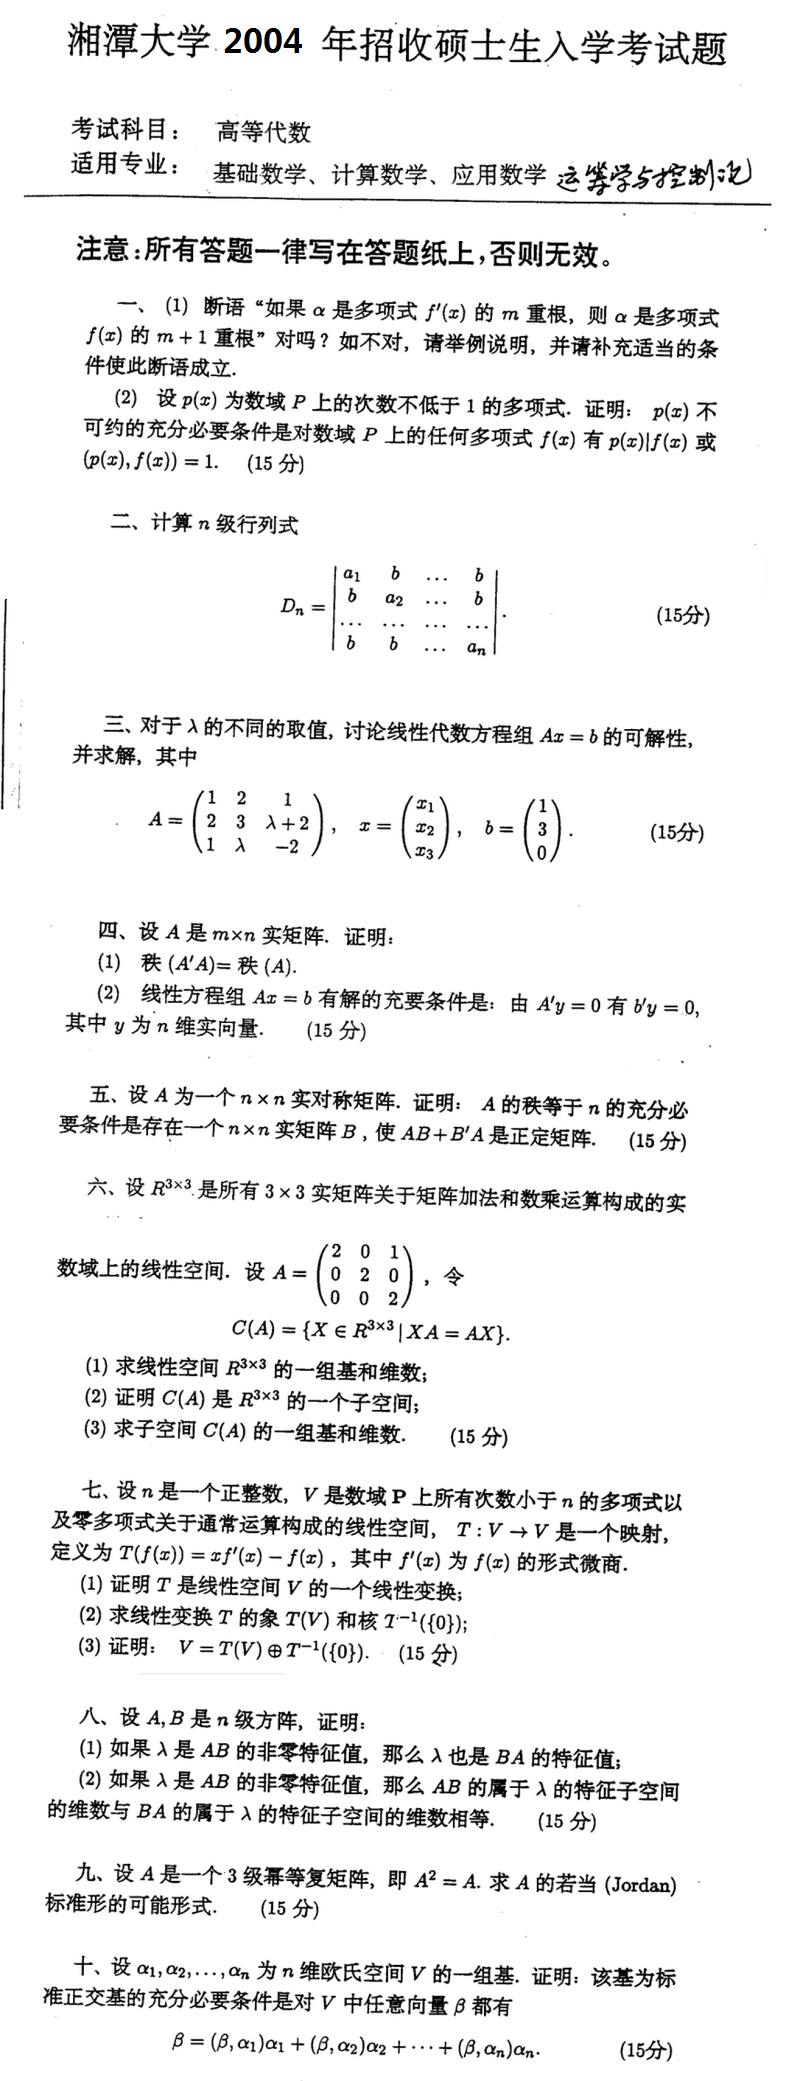 2004湘潭大学考研数学真题（高等代数）.png